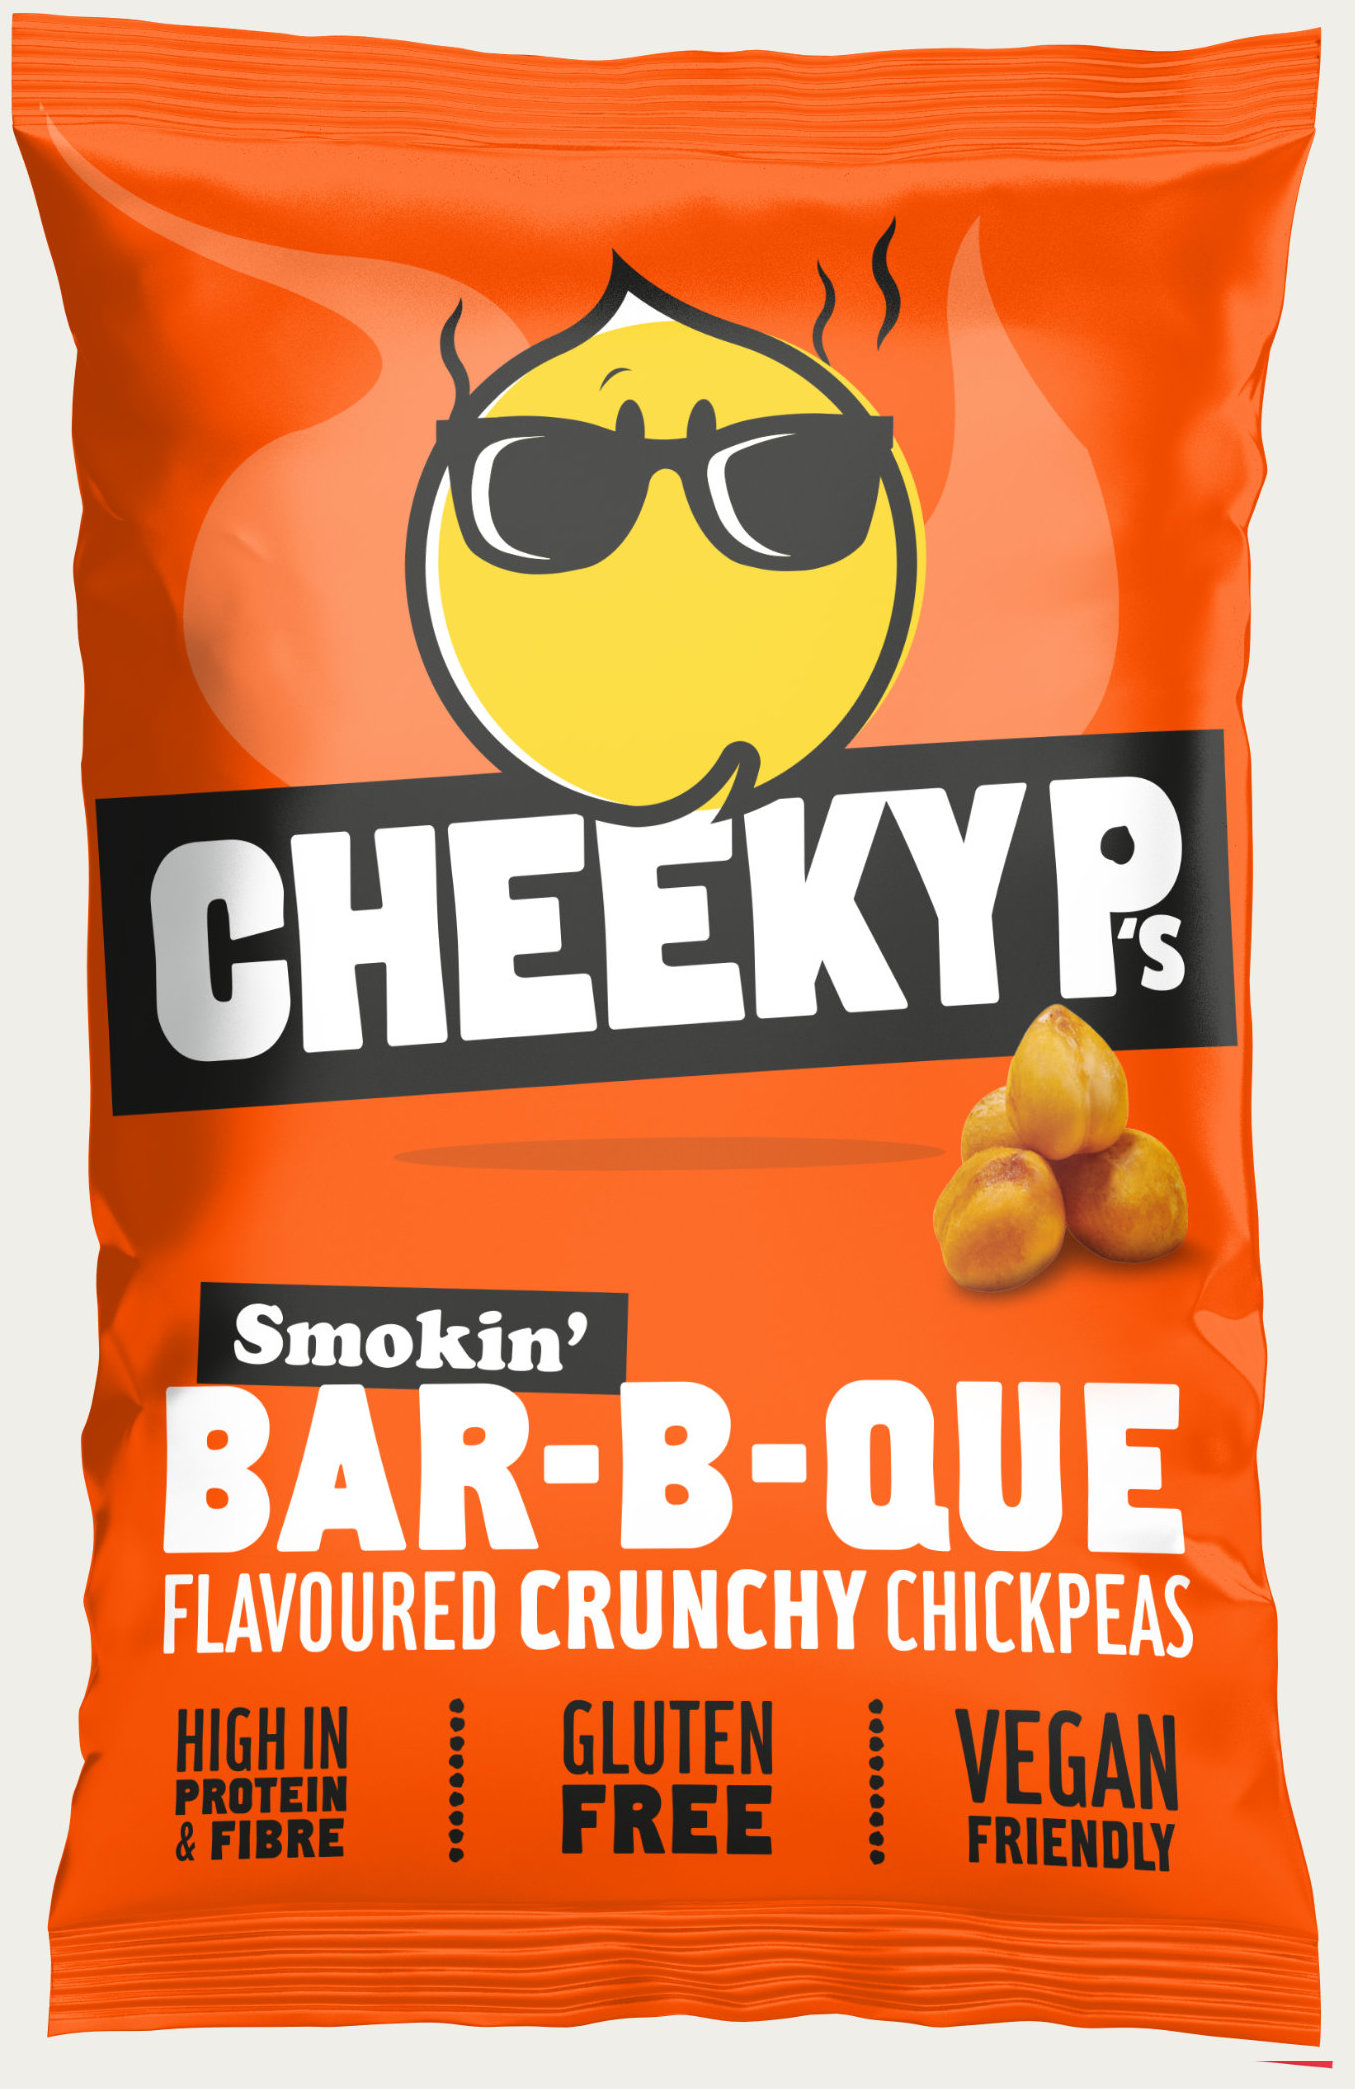 Cheeky P's bar-b-que